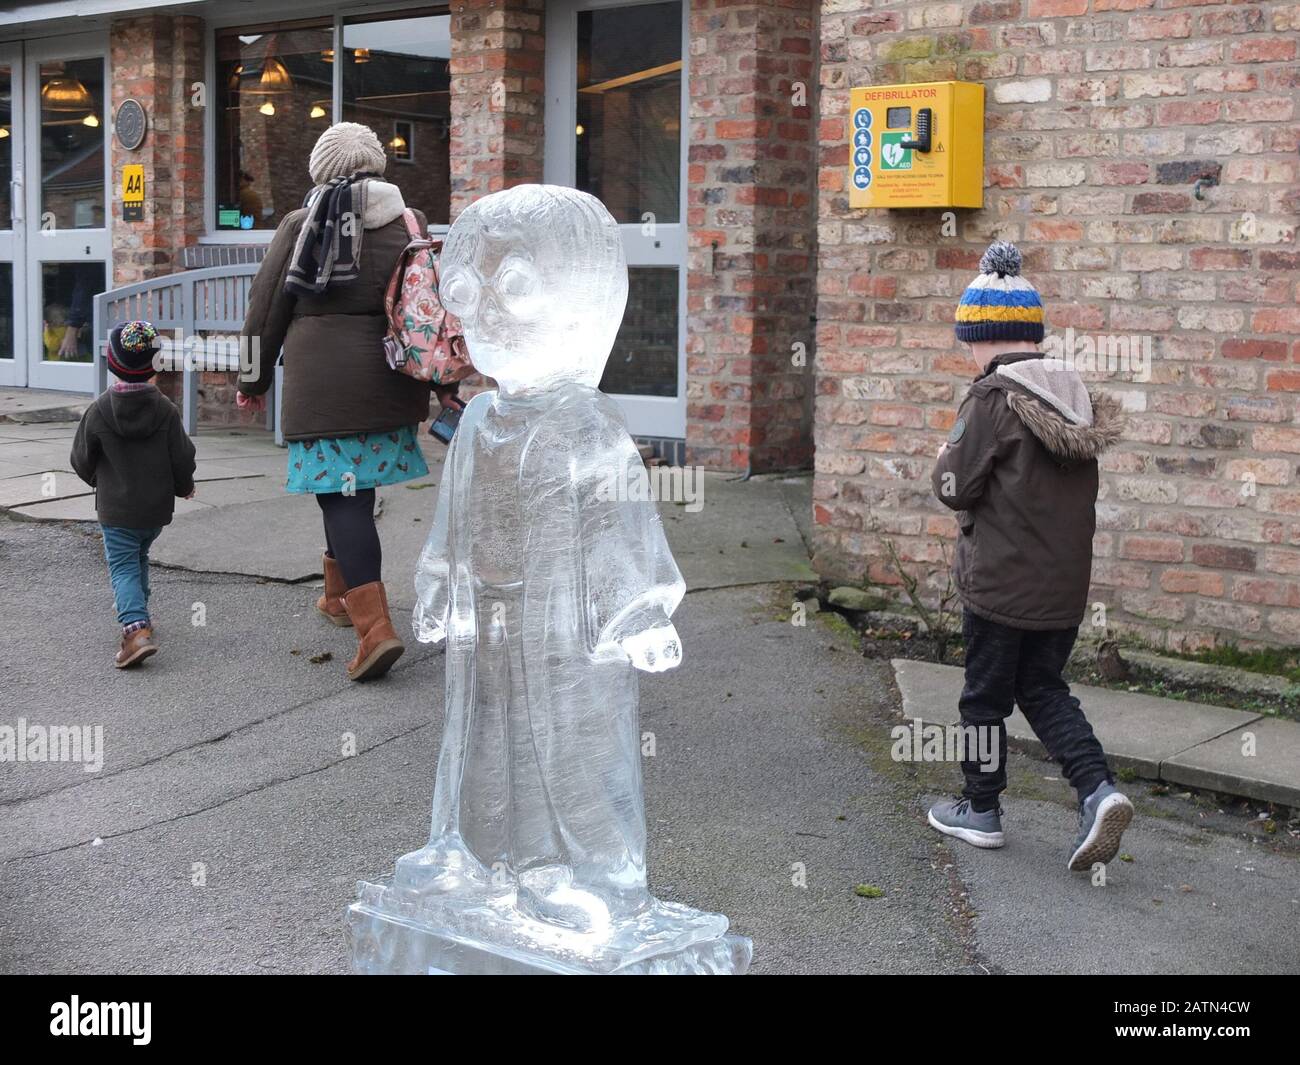 Deux jeunes garçons avec leur mère marchent au-delà d'une glace Sculpture de Harry Potter au York Ice Trail 2020 où des sculptures de glace sont exposées autour de la ville Banque D'Images